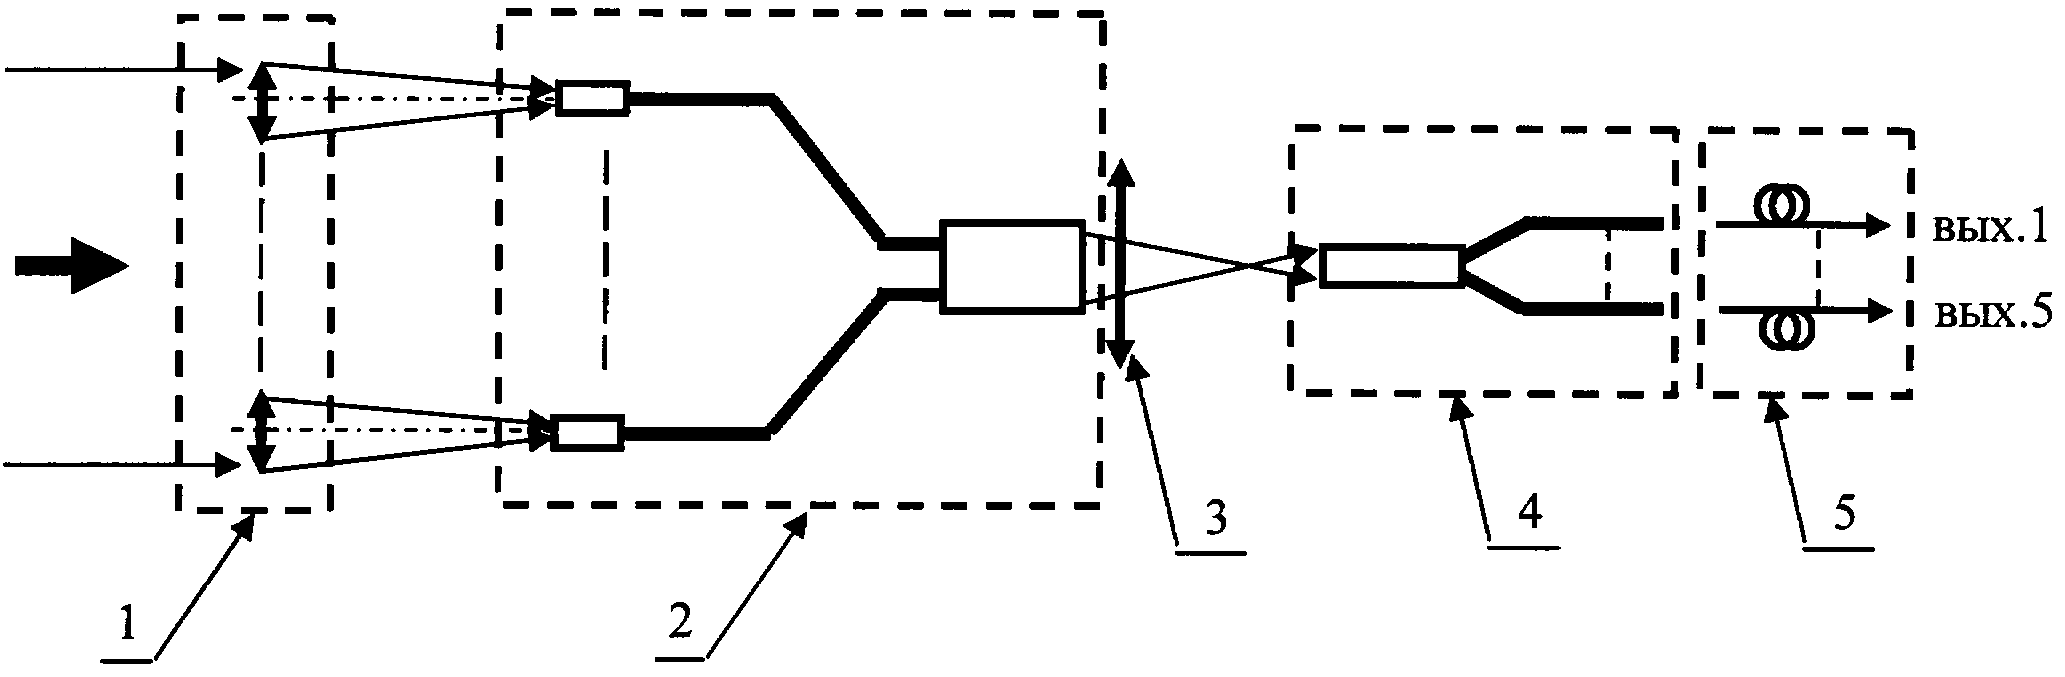 Устройство ввода импульсного лазерного пучка в волоконно-оптическую линию связи